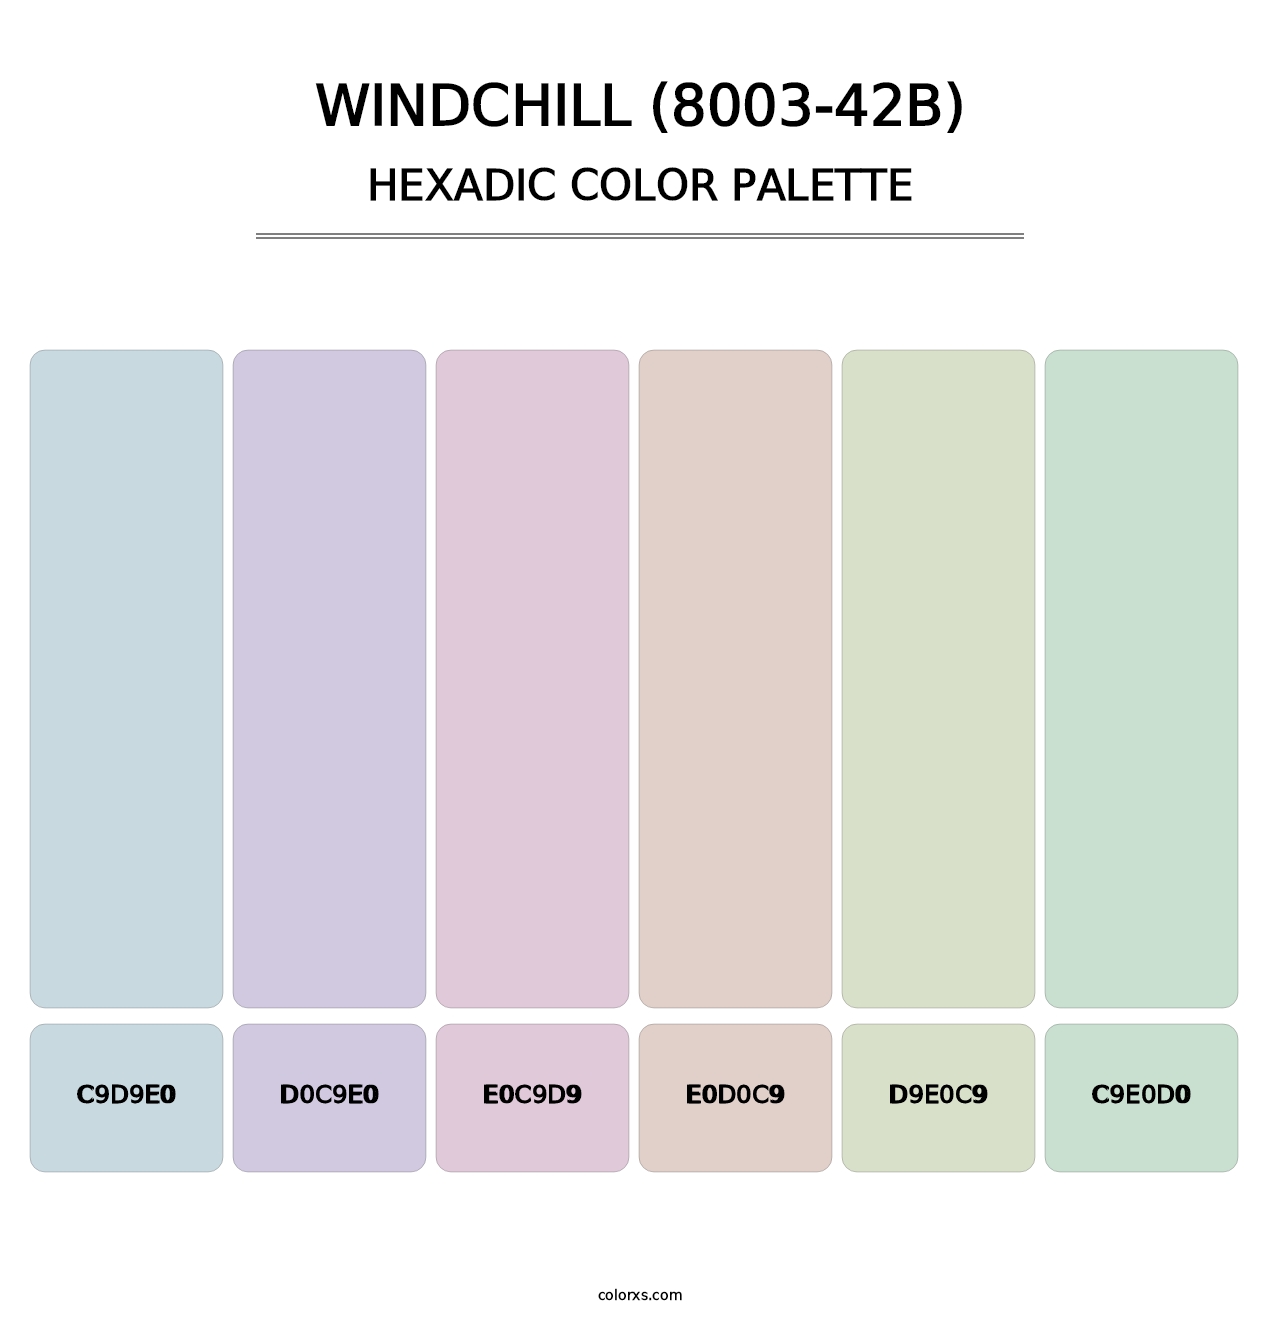 Windchill (8003-42B) - Hexadic Color Palette